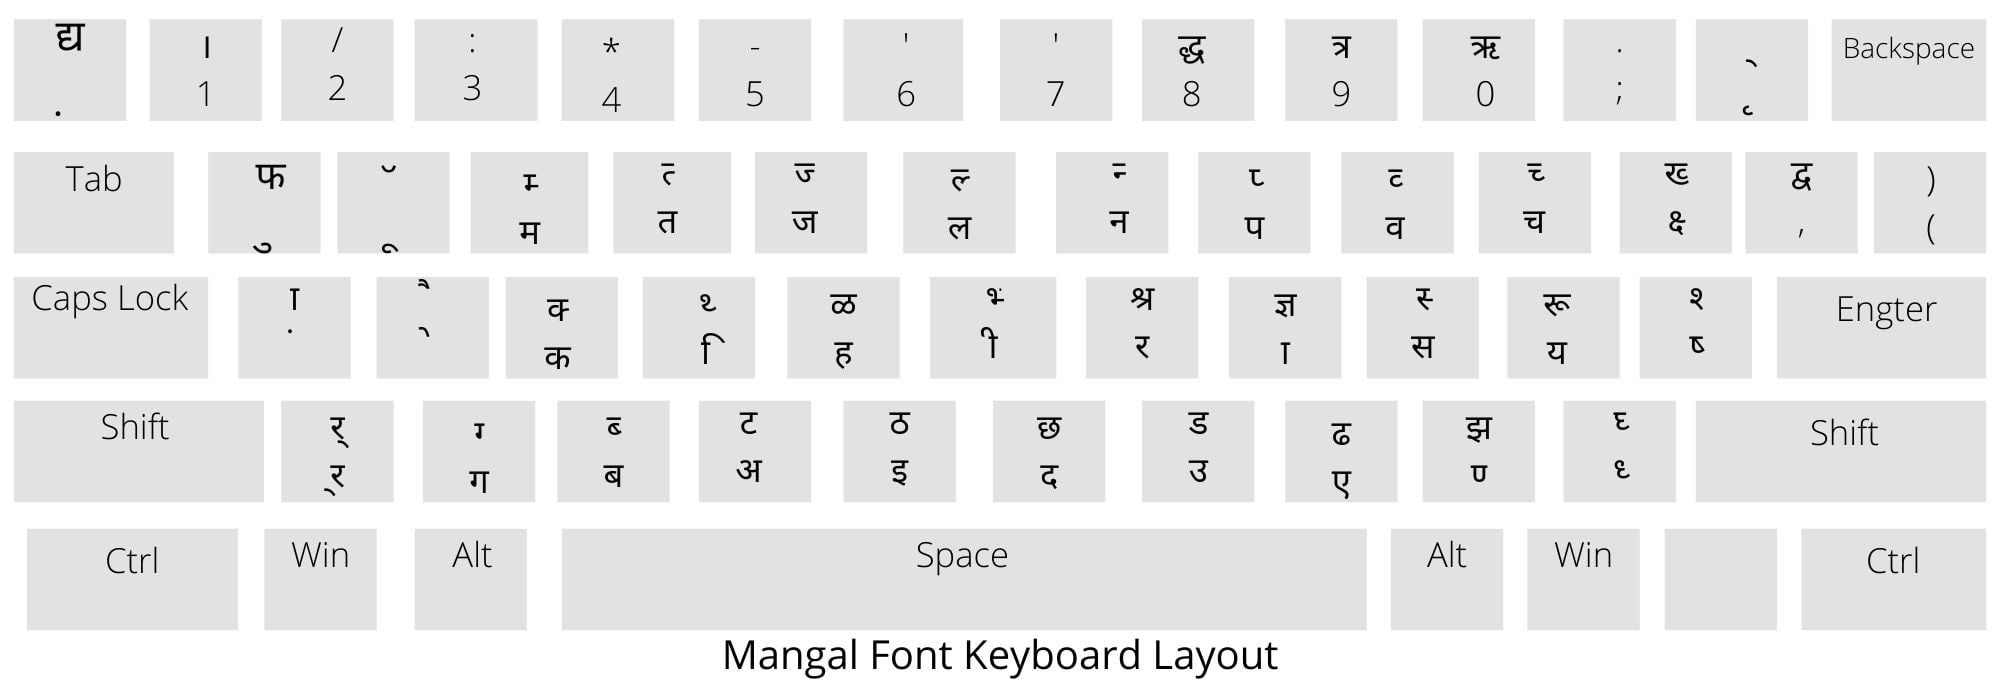 mangal font keyboard layout